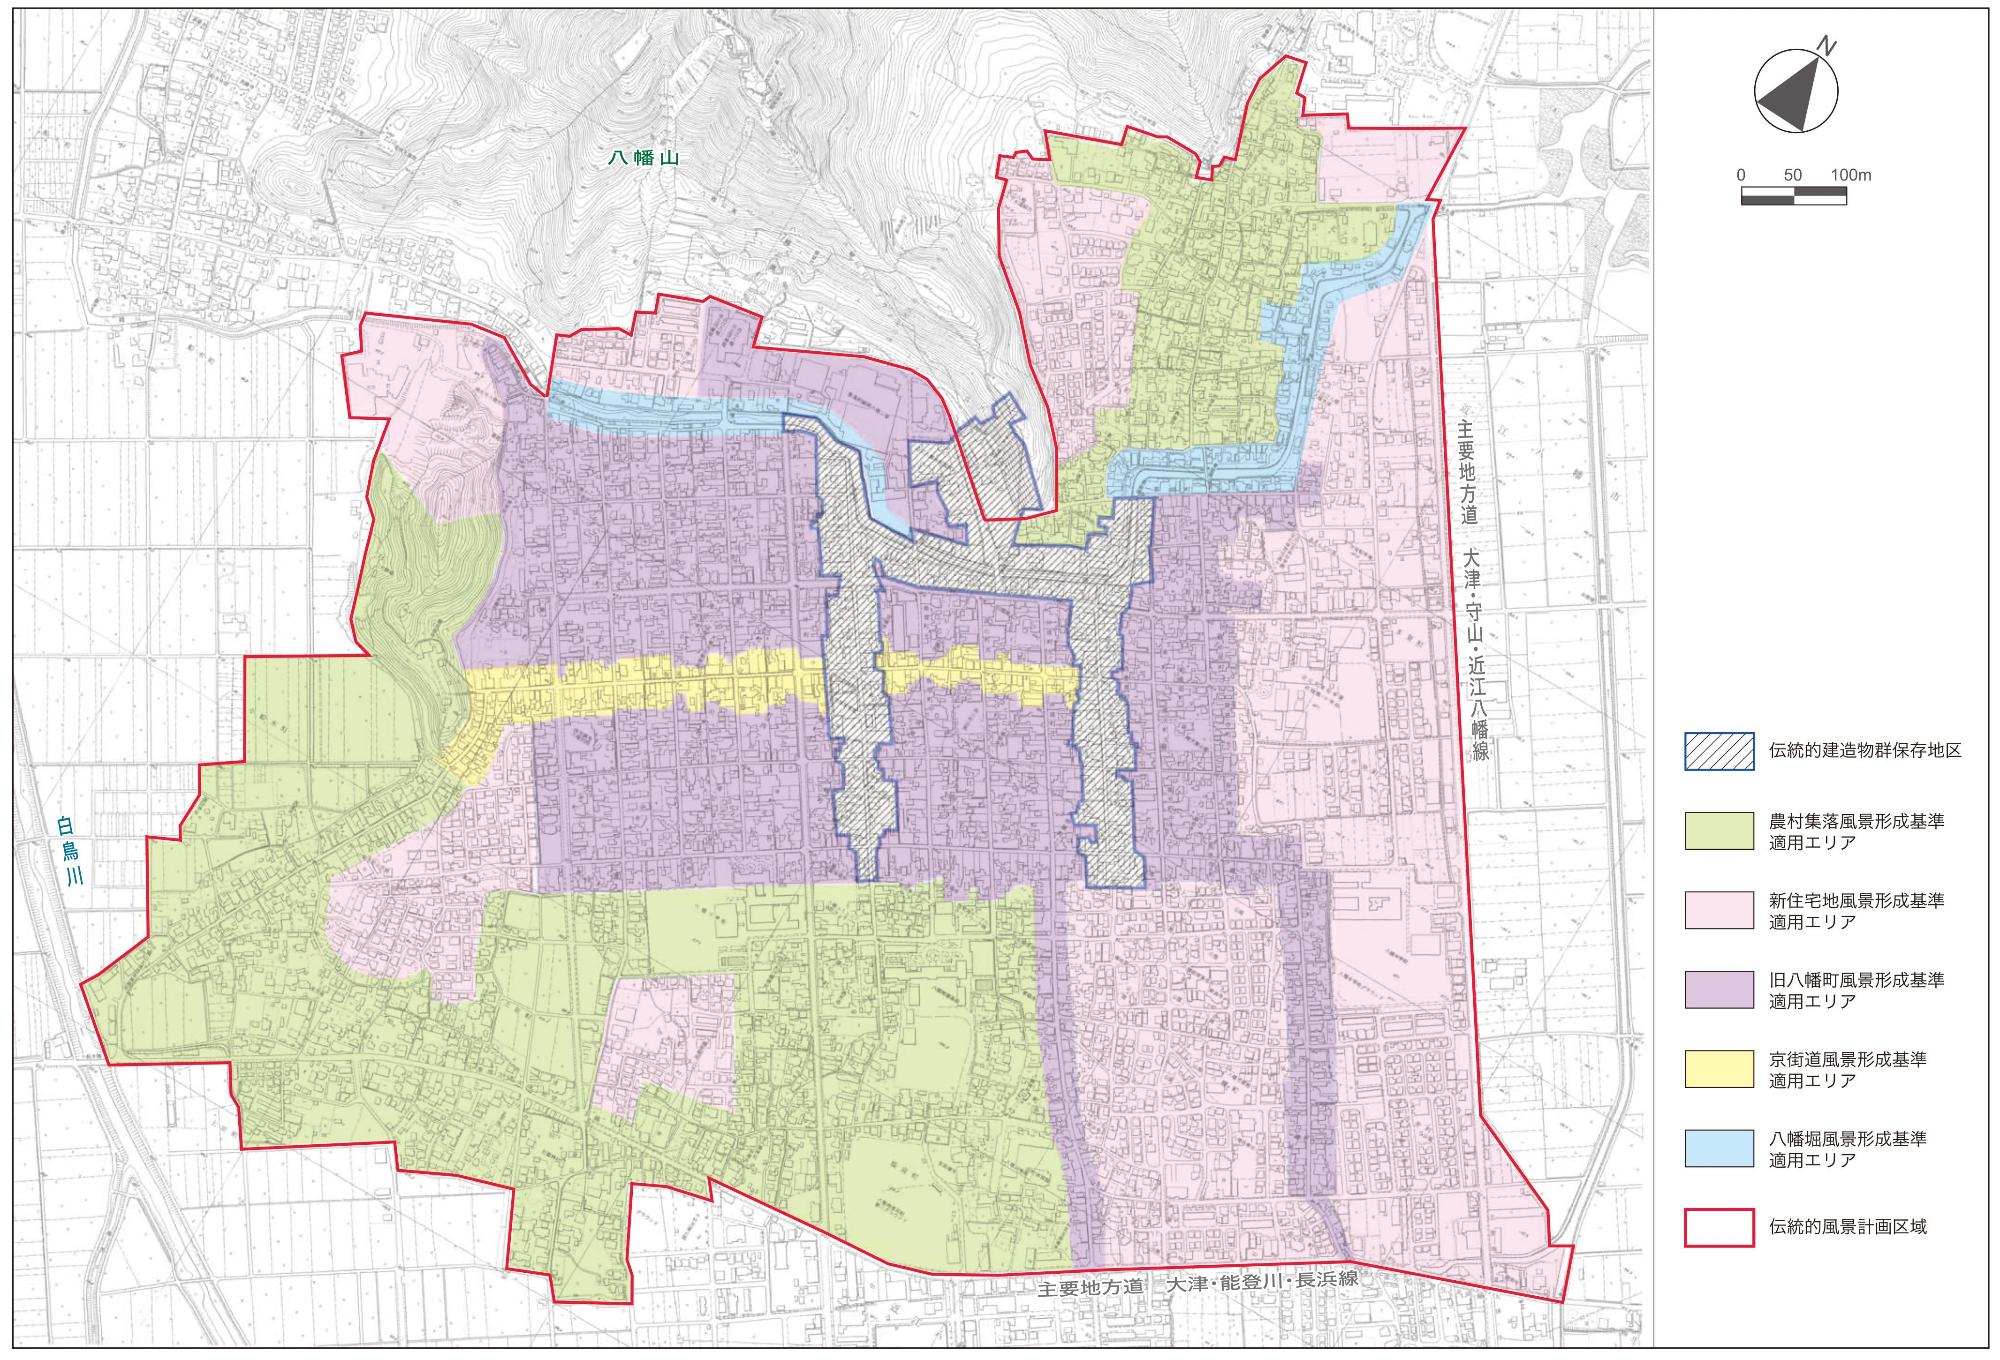 景観法に基づいた伝統的風景計画により、近江八幡市を地区ごとに色分けした地図